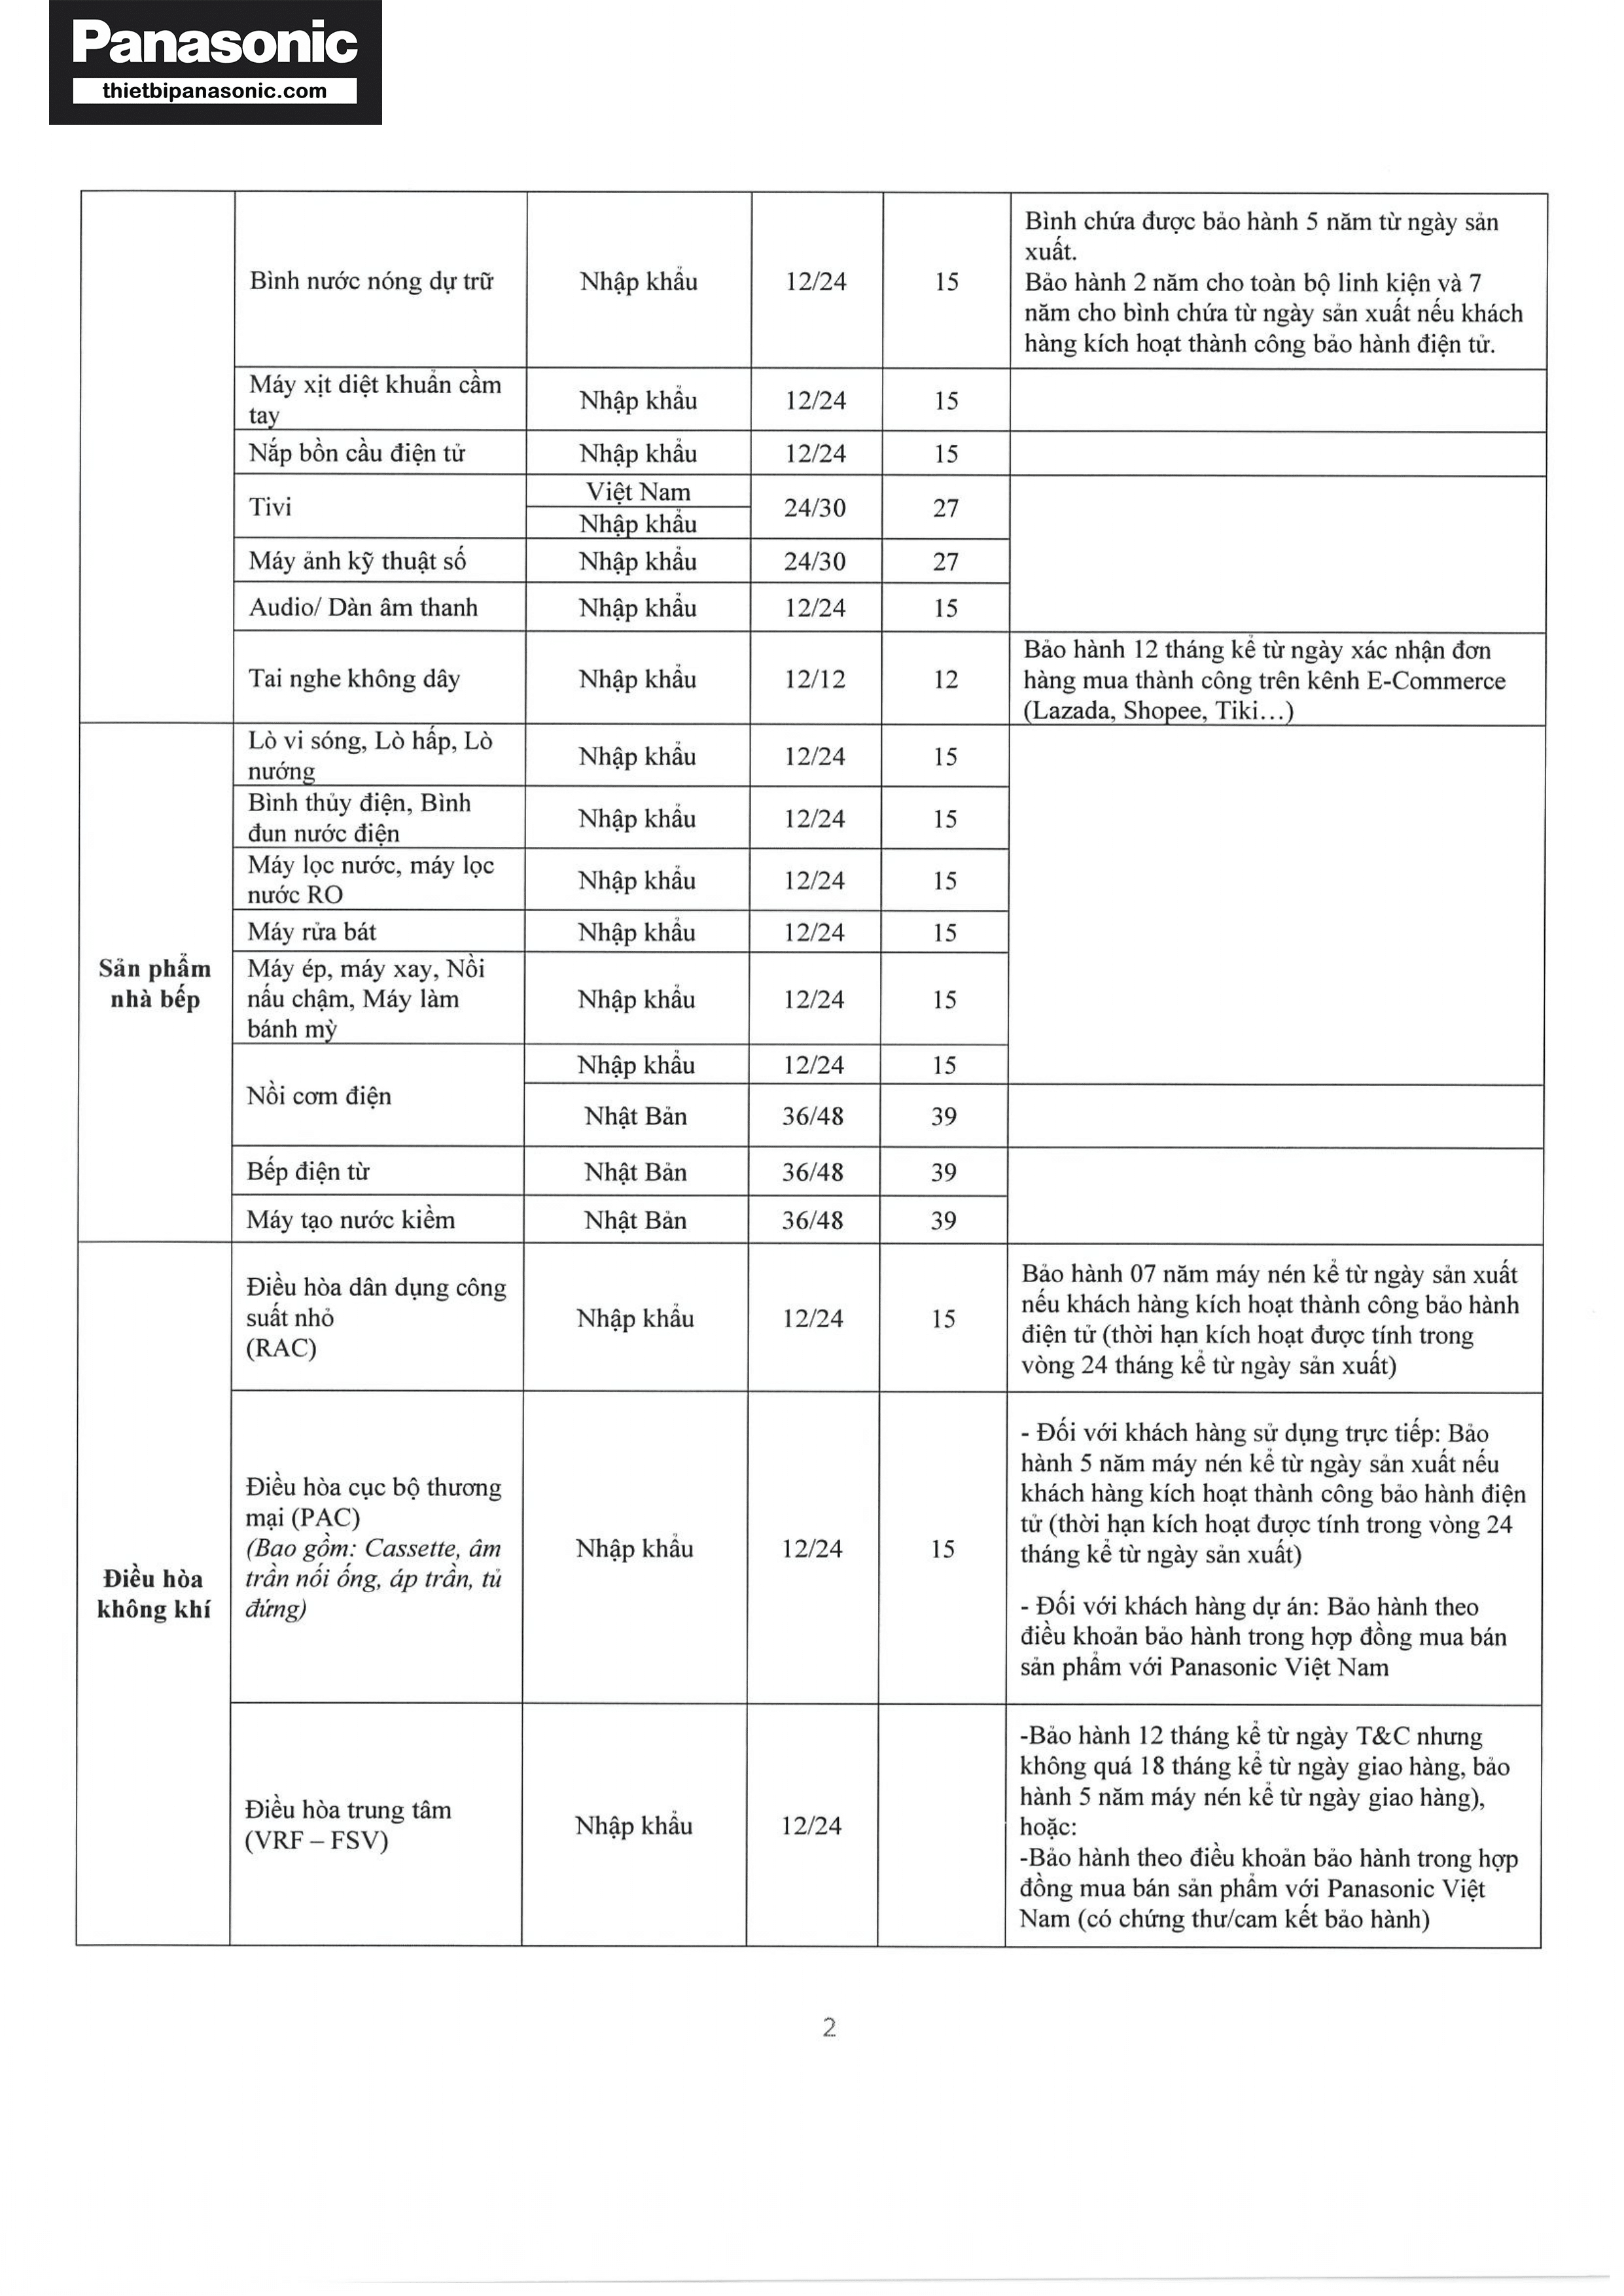 Chính sách bảo hành Panasonic năm 2023-2024 (Trang 2/6)